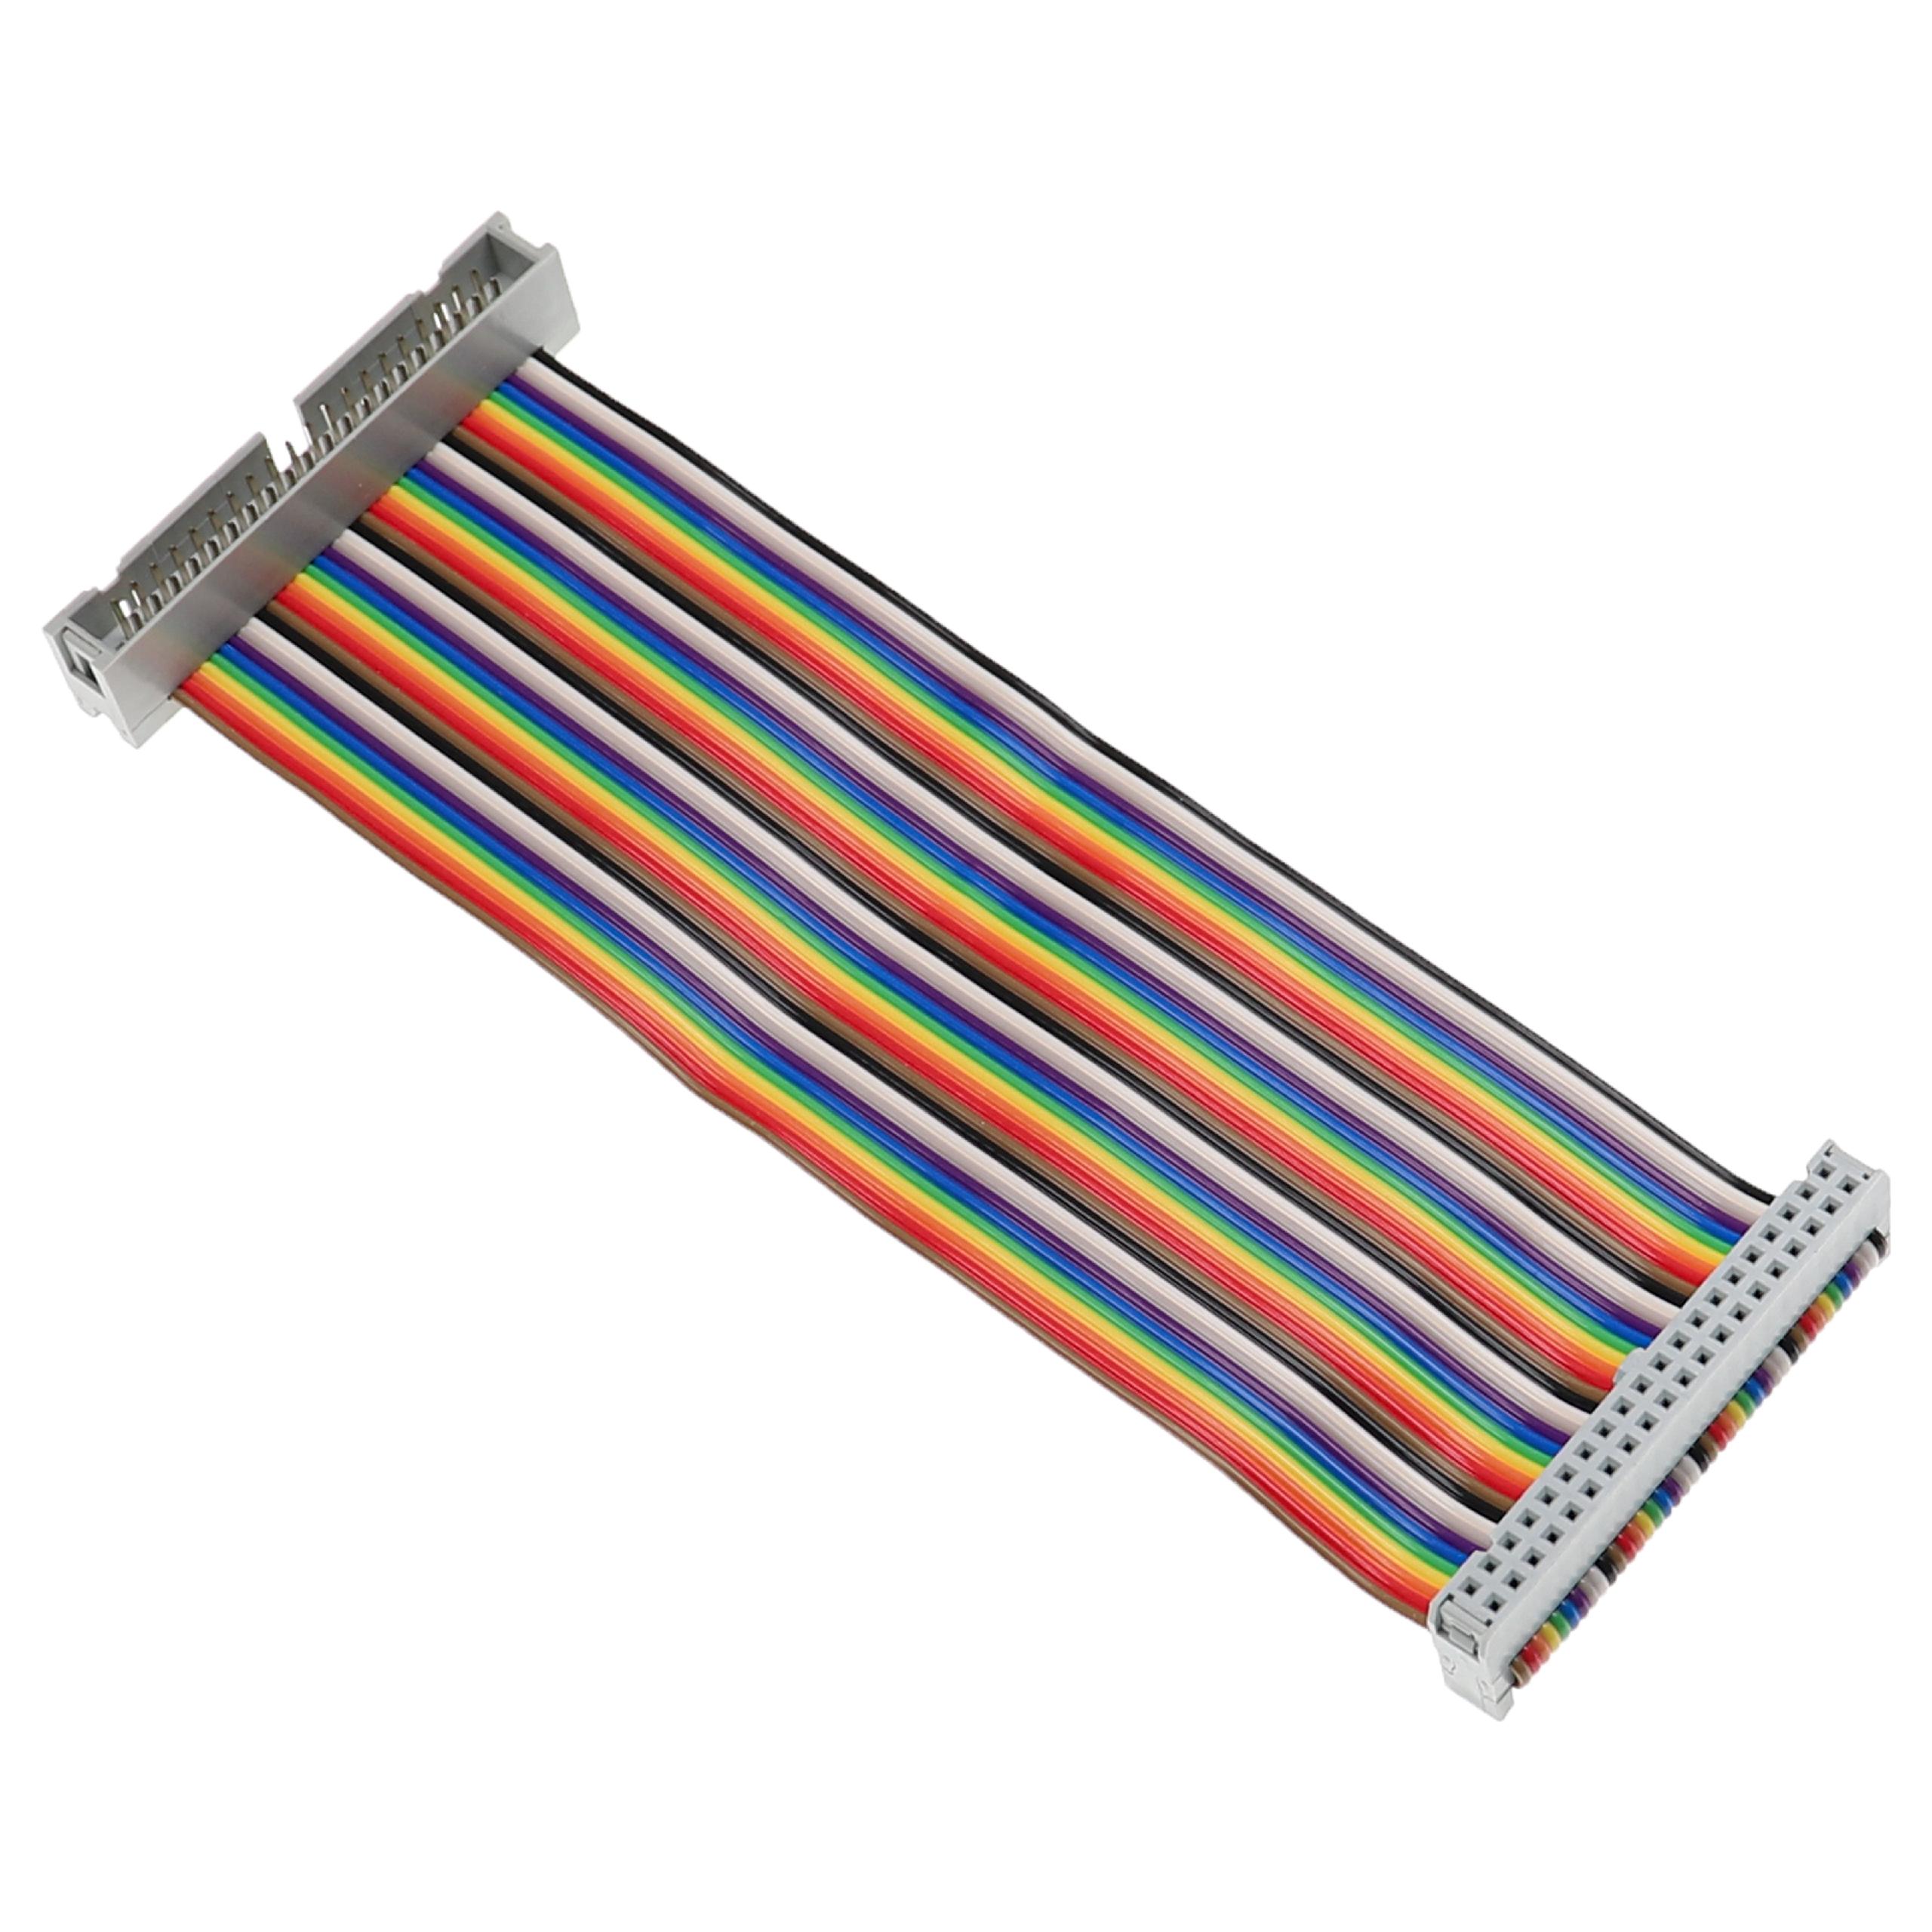 Cable GPIO 40 pines compatible con Raspberry Pi miniordenador - Cable alargador GPIO multicolor, 15 cm